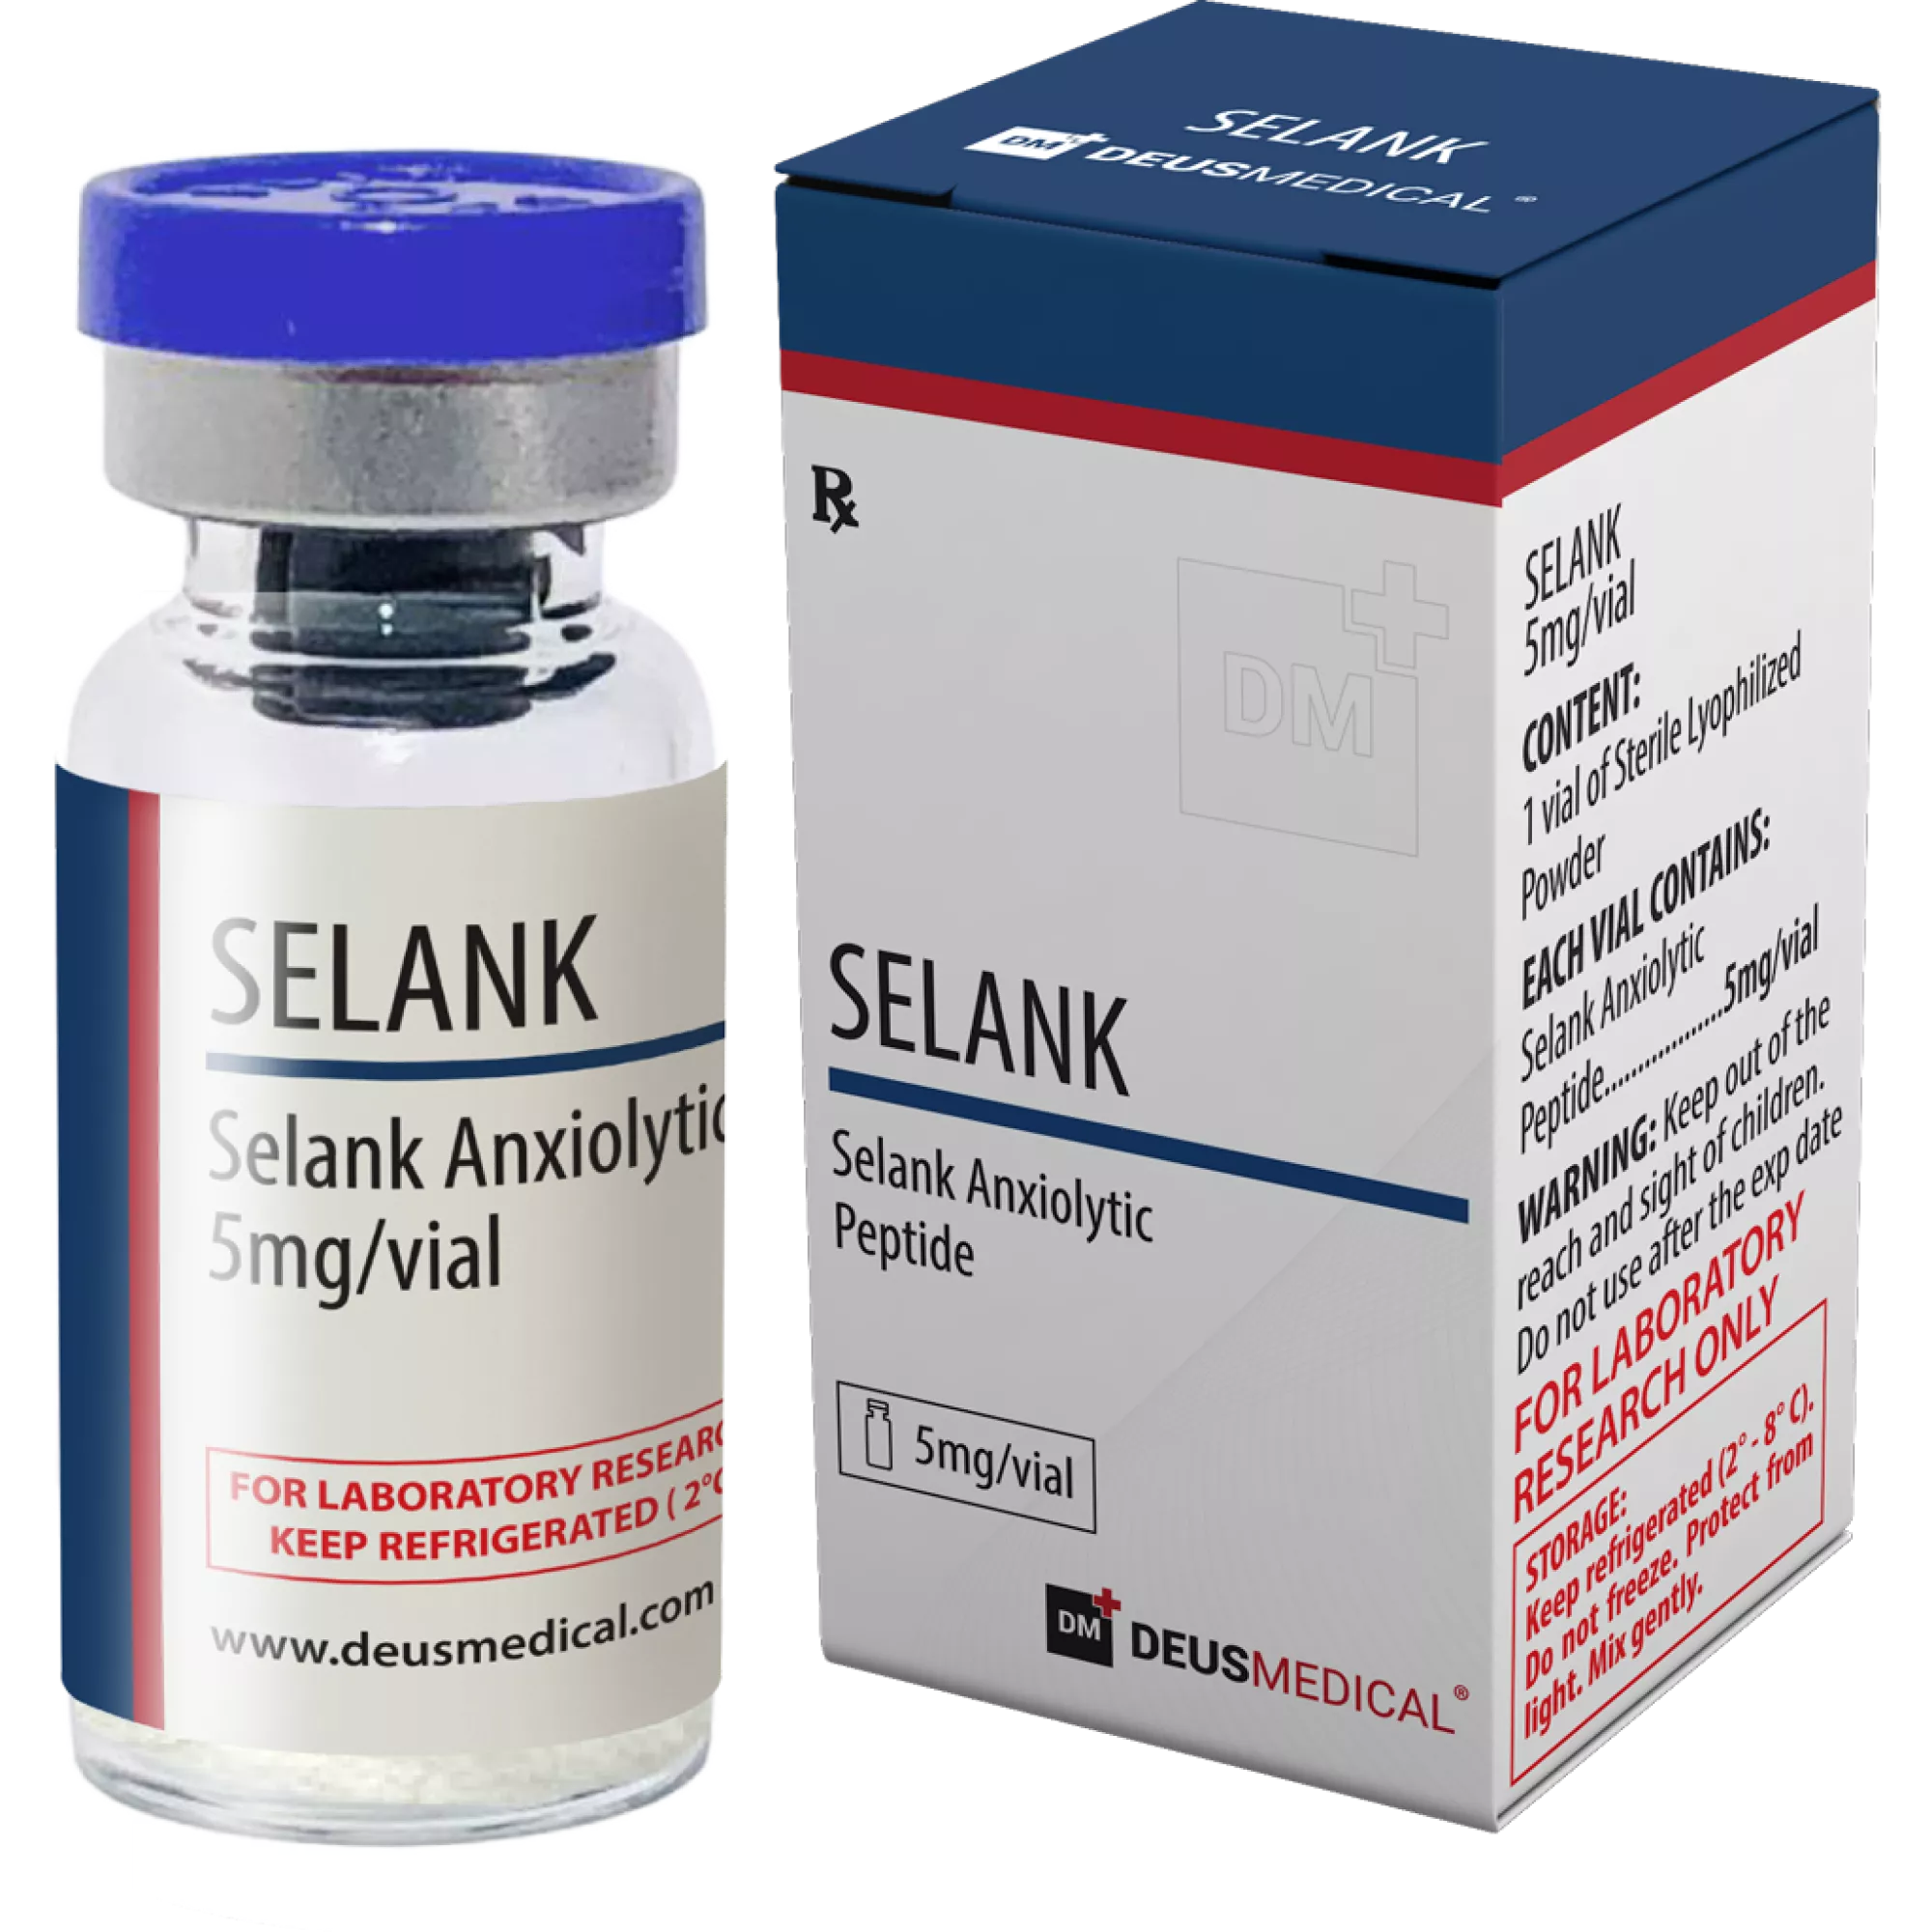 SELANK (Selank Anxiolytic Peptide), Deus Medical, Buy Steroids Online - www.deuspower.shop